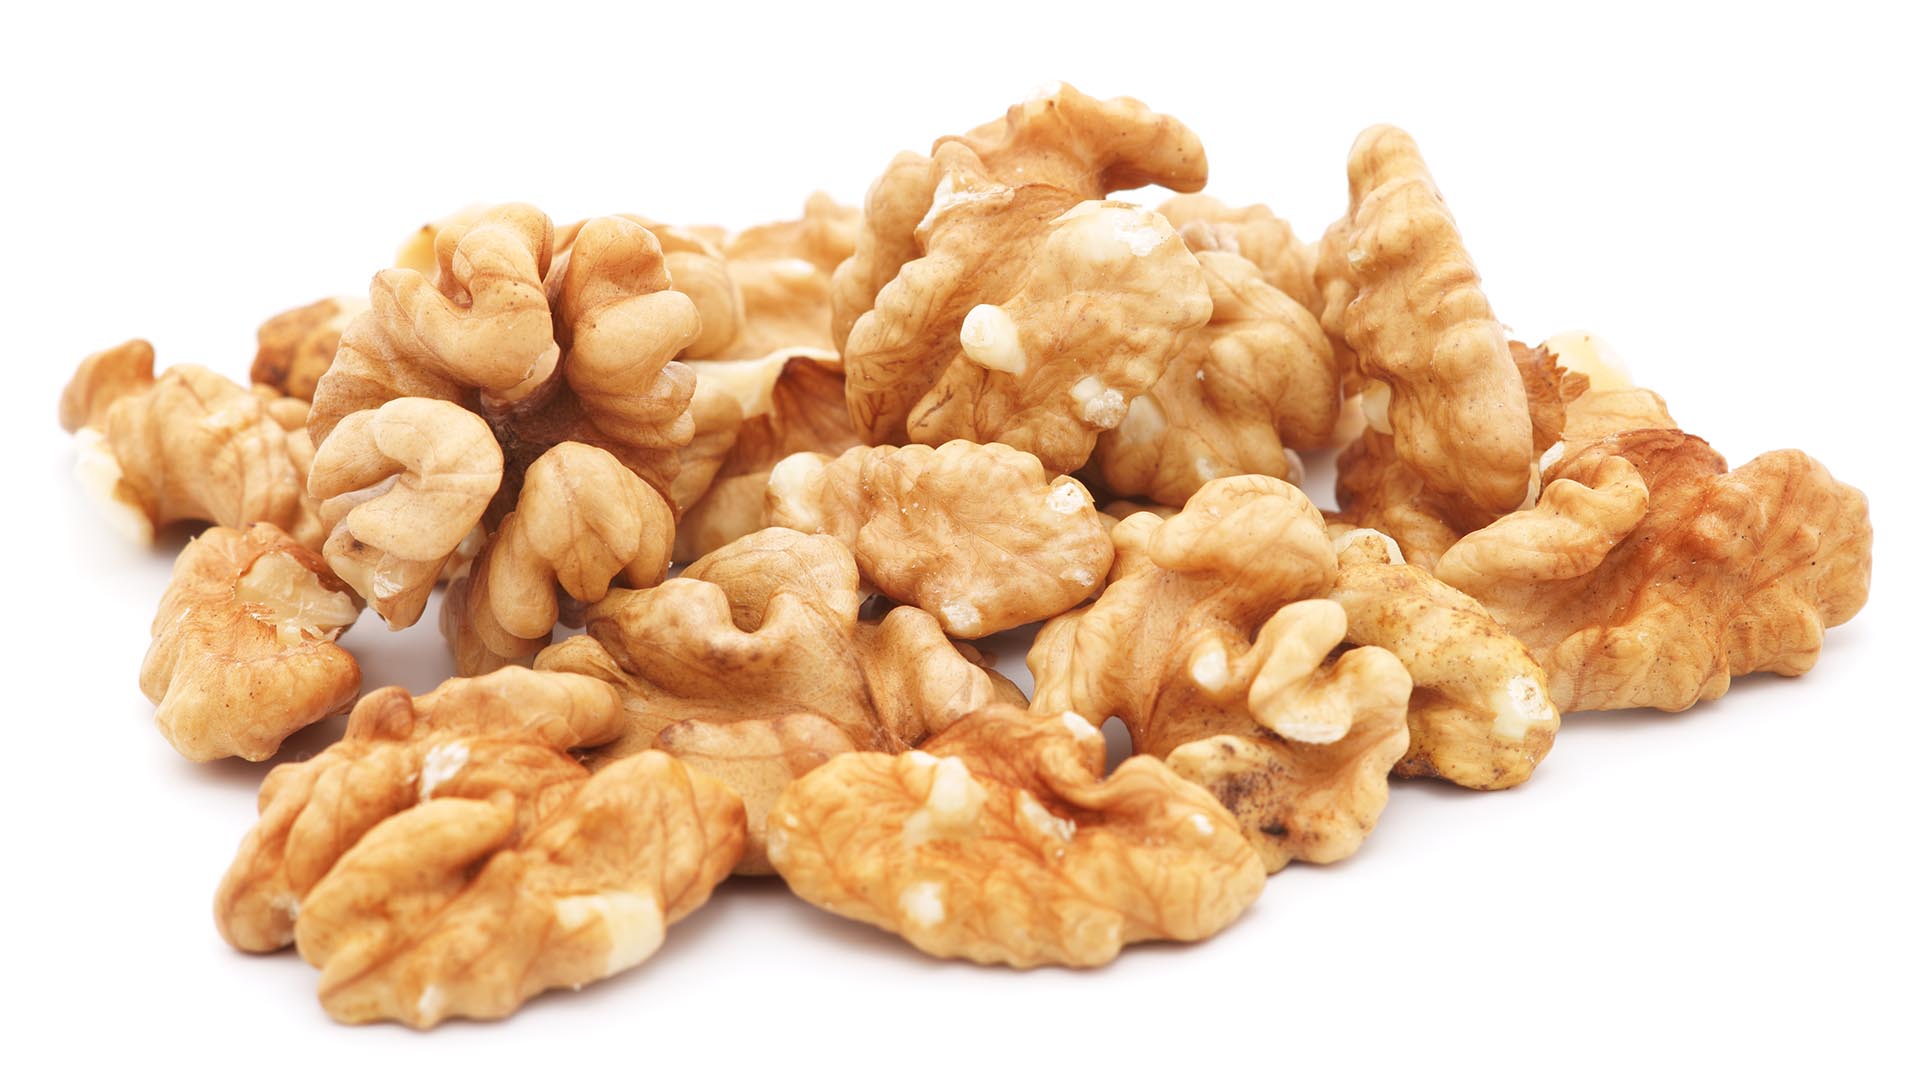 “Nuestro estudio mostró que durante más de 20 años de seguimiento, los consumidores de nueces, en comparación con los no consumidores, tenían un patrón de dieta más saludable"